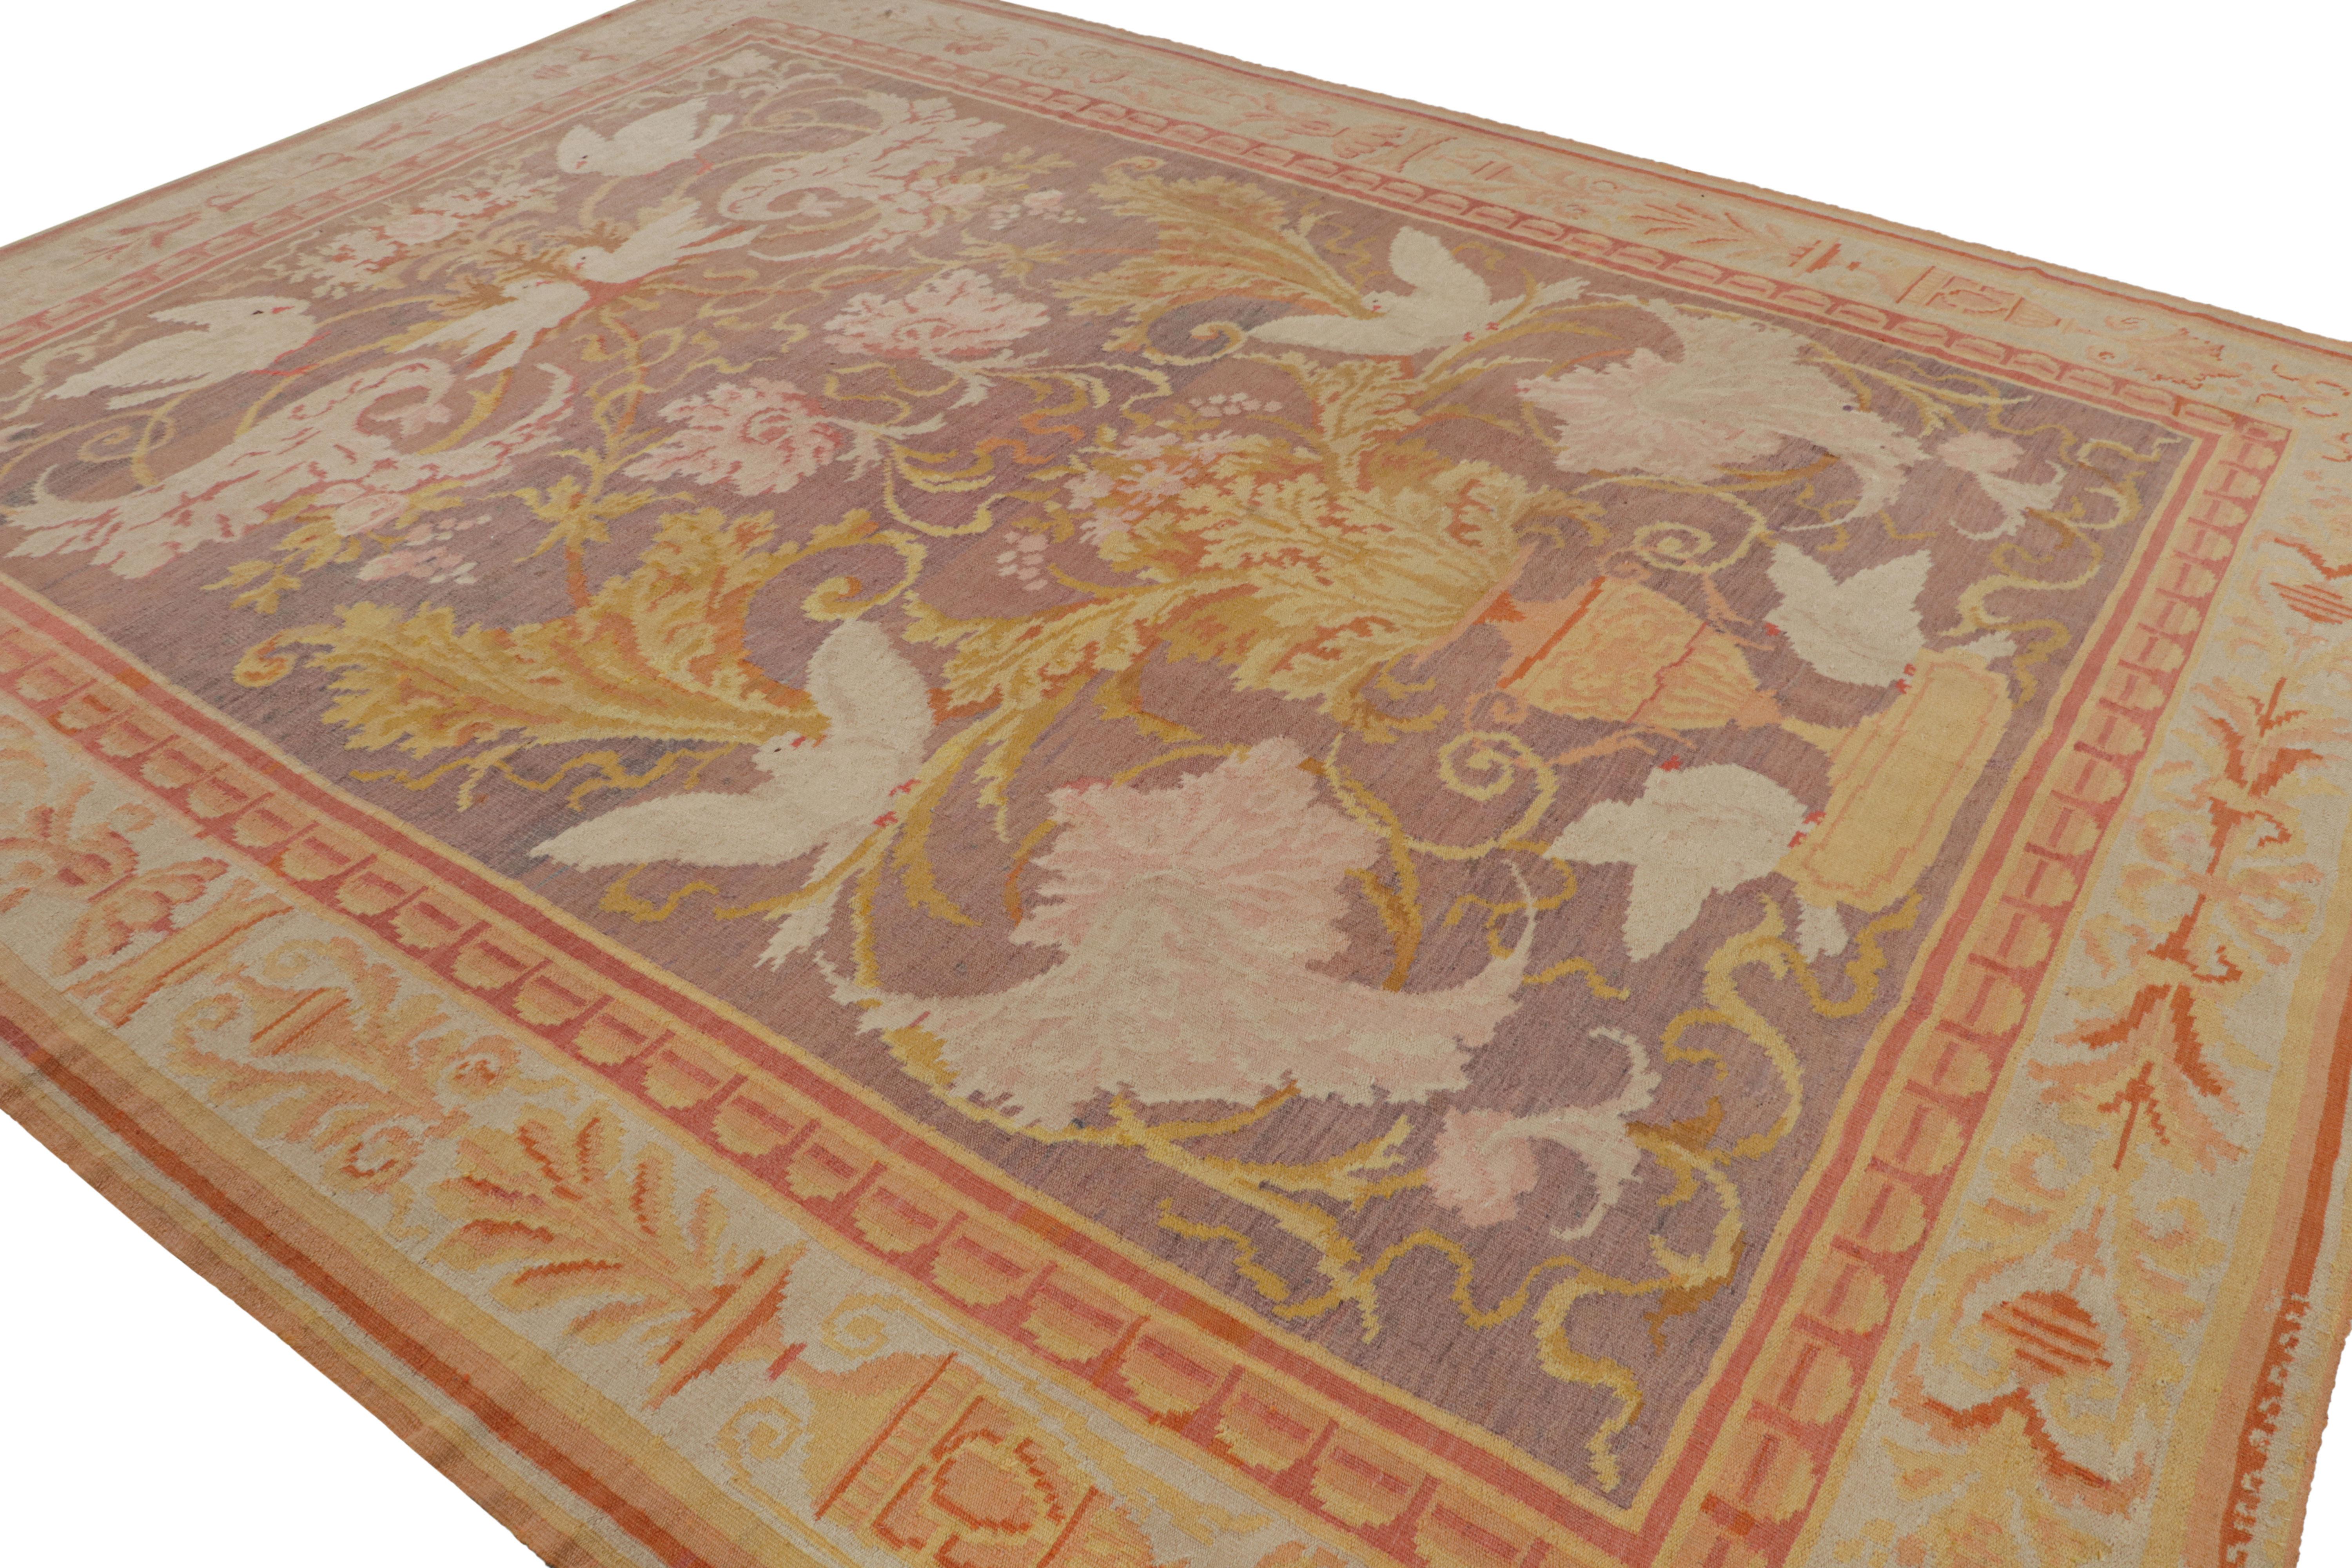 Handgeknüpft aus Wolle, ca. 1920-1930, zeigt dieser 11x14 große, seltene antike bessarabische Teppich ein violettes Feld und eine cremefarbene Bordüre, die elegante florale Muster und Bilder von Vögeln um eine Vase unterstreichen. 

Über das Design: